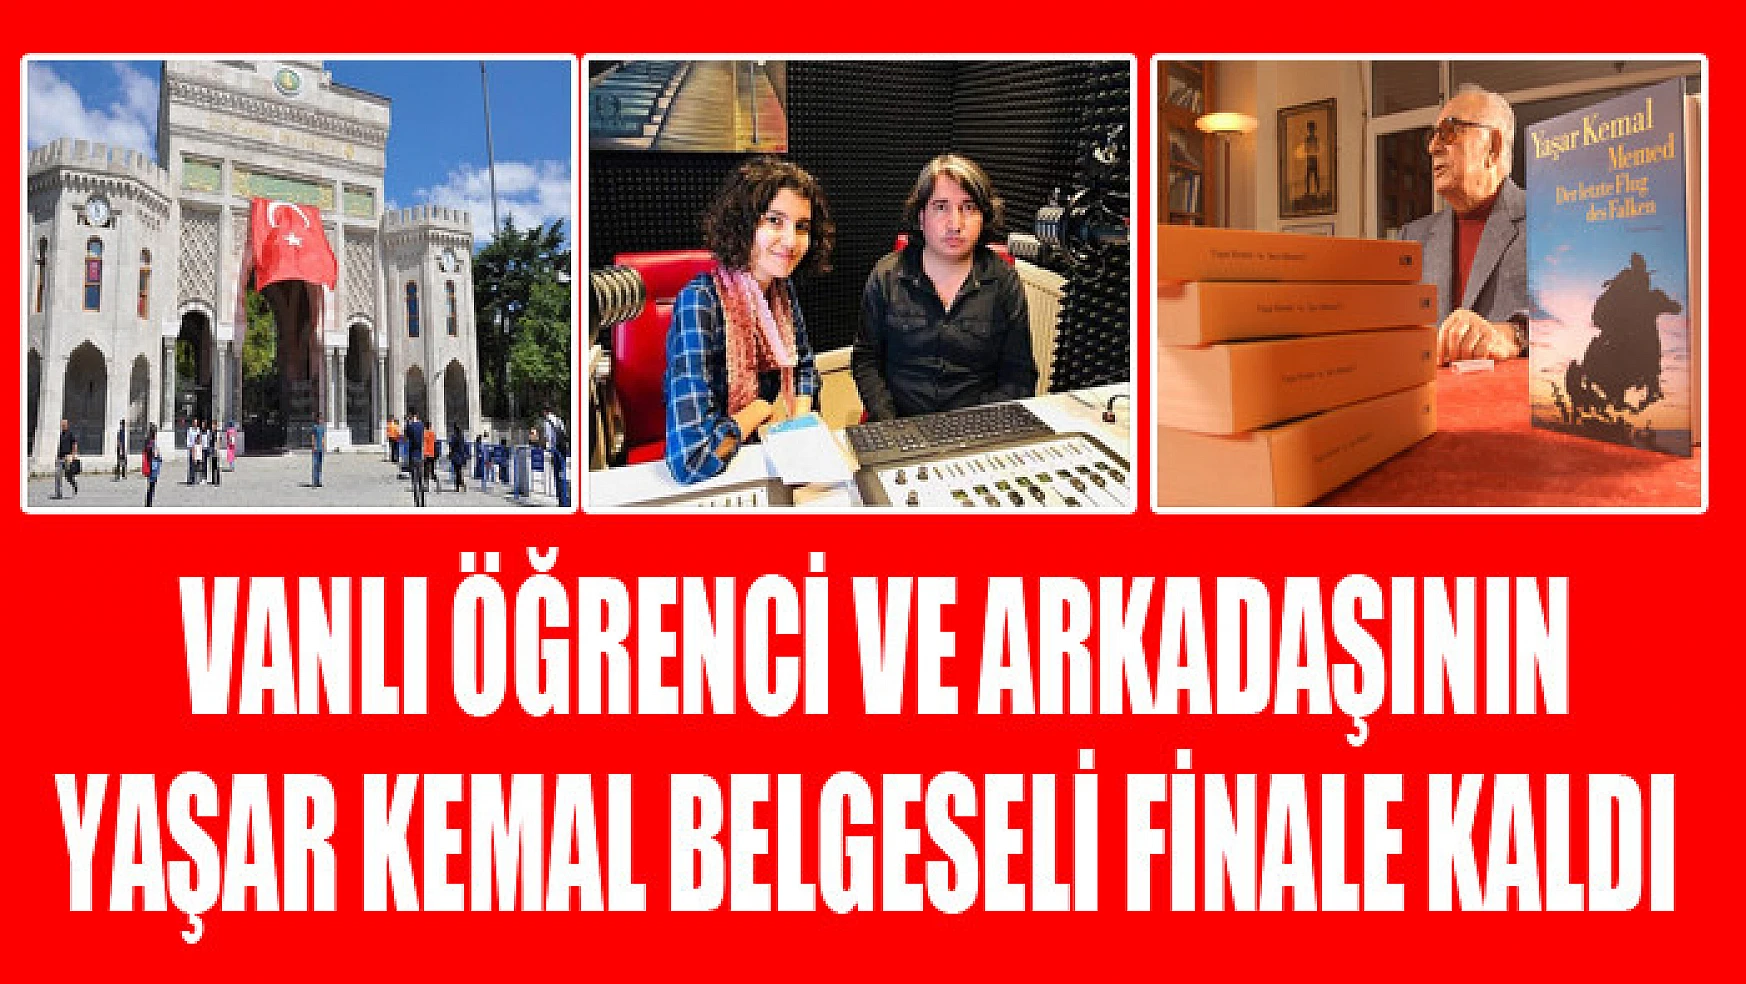 Vanlı öğrenci ve arkadaşının hazırladığı 'Yaşar Kemal' belgeseli finale kaldı 